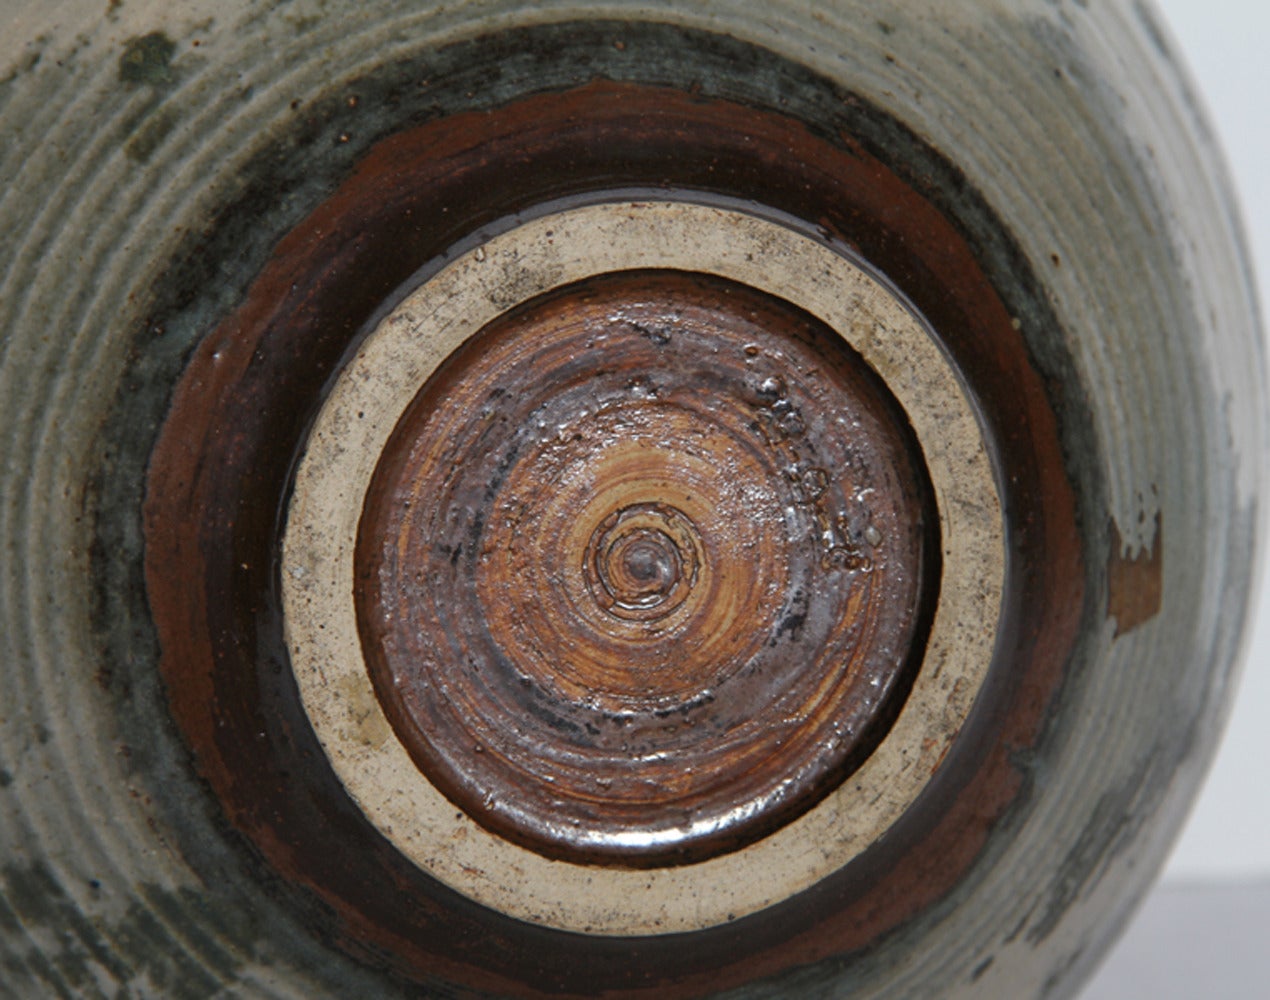 Year: 1966
Medium: Glazed Ceramic Vase, dated on bottom
Size: 12 in. x 9 in. x 9 in. (30.48 cm x 22.86 cm x 22.86 cm)